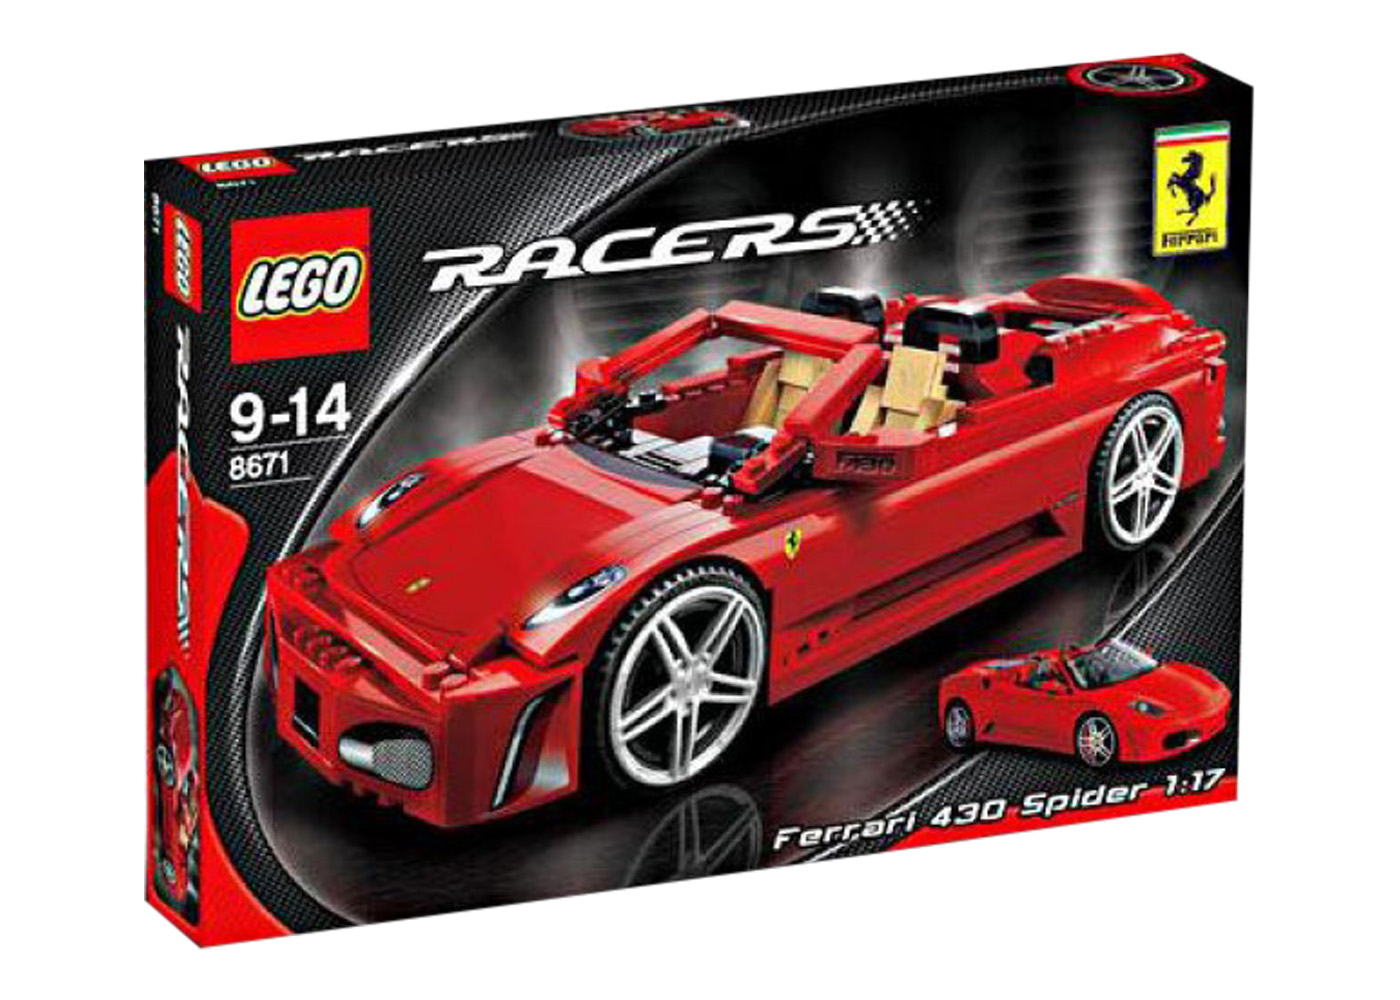 LEGO Racers Ferrari 430 Spider Set 8671 - CN